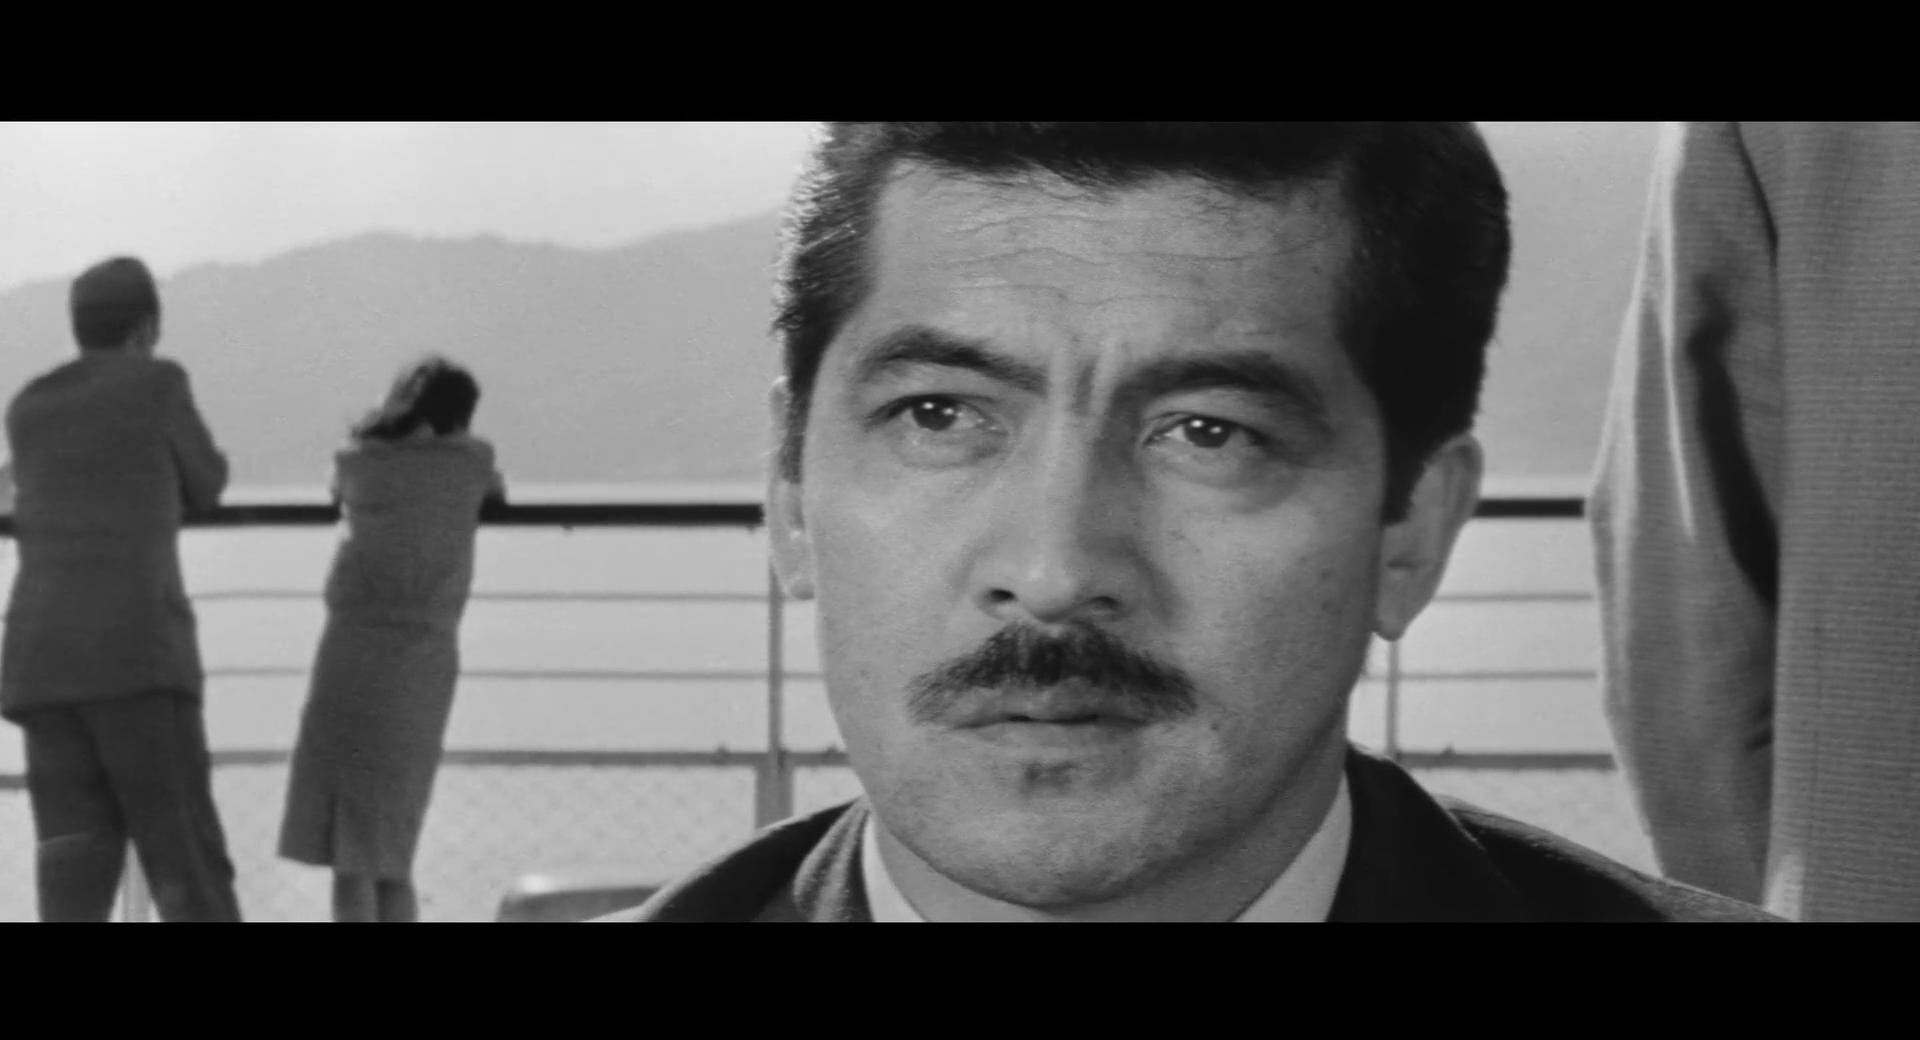 Kiga kaikyô (1965) Screenshot 2